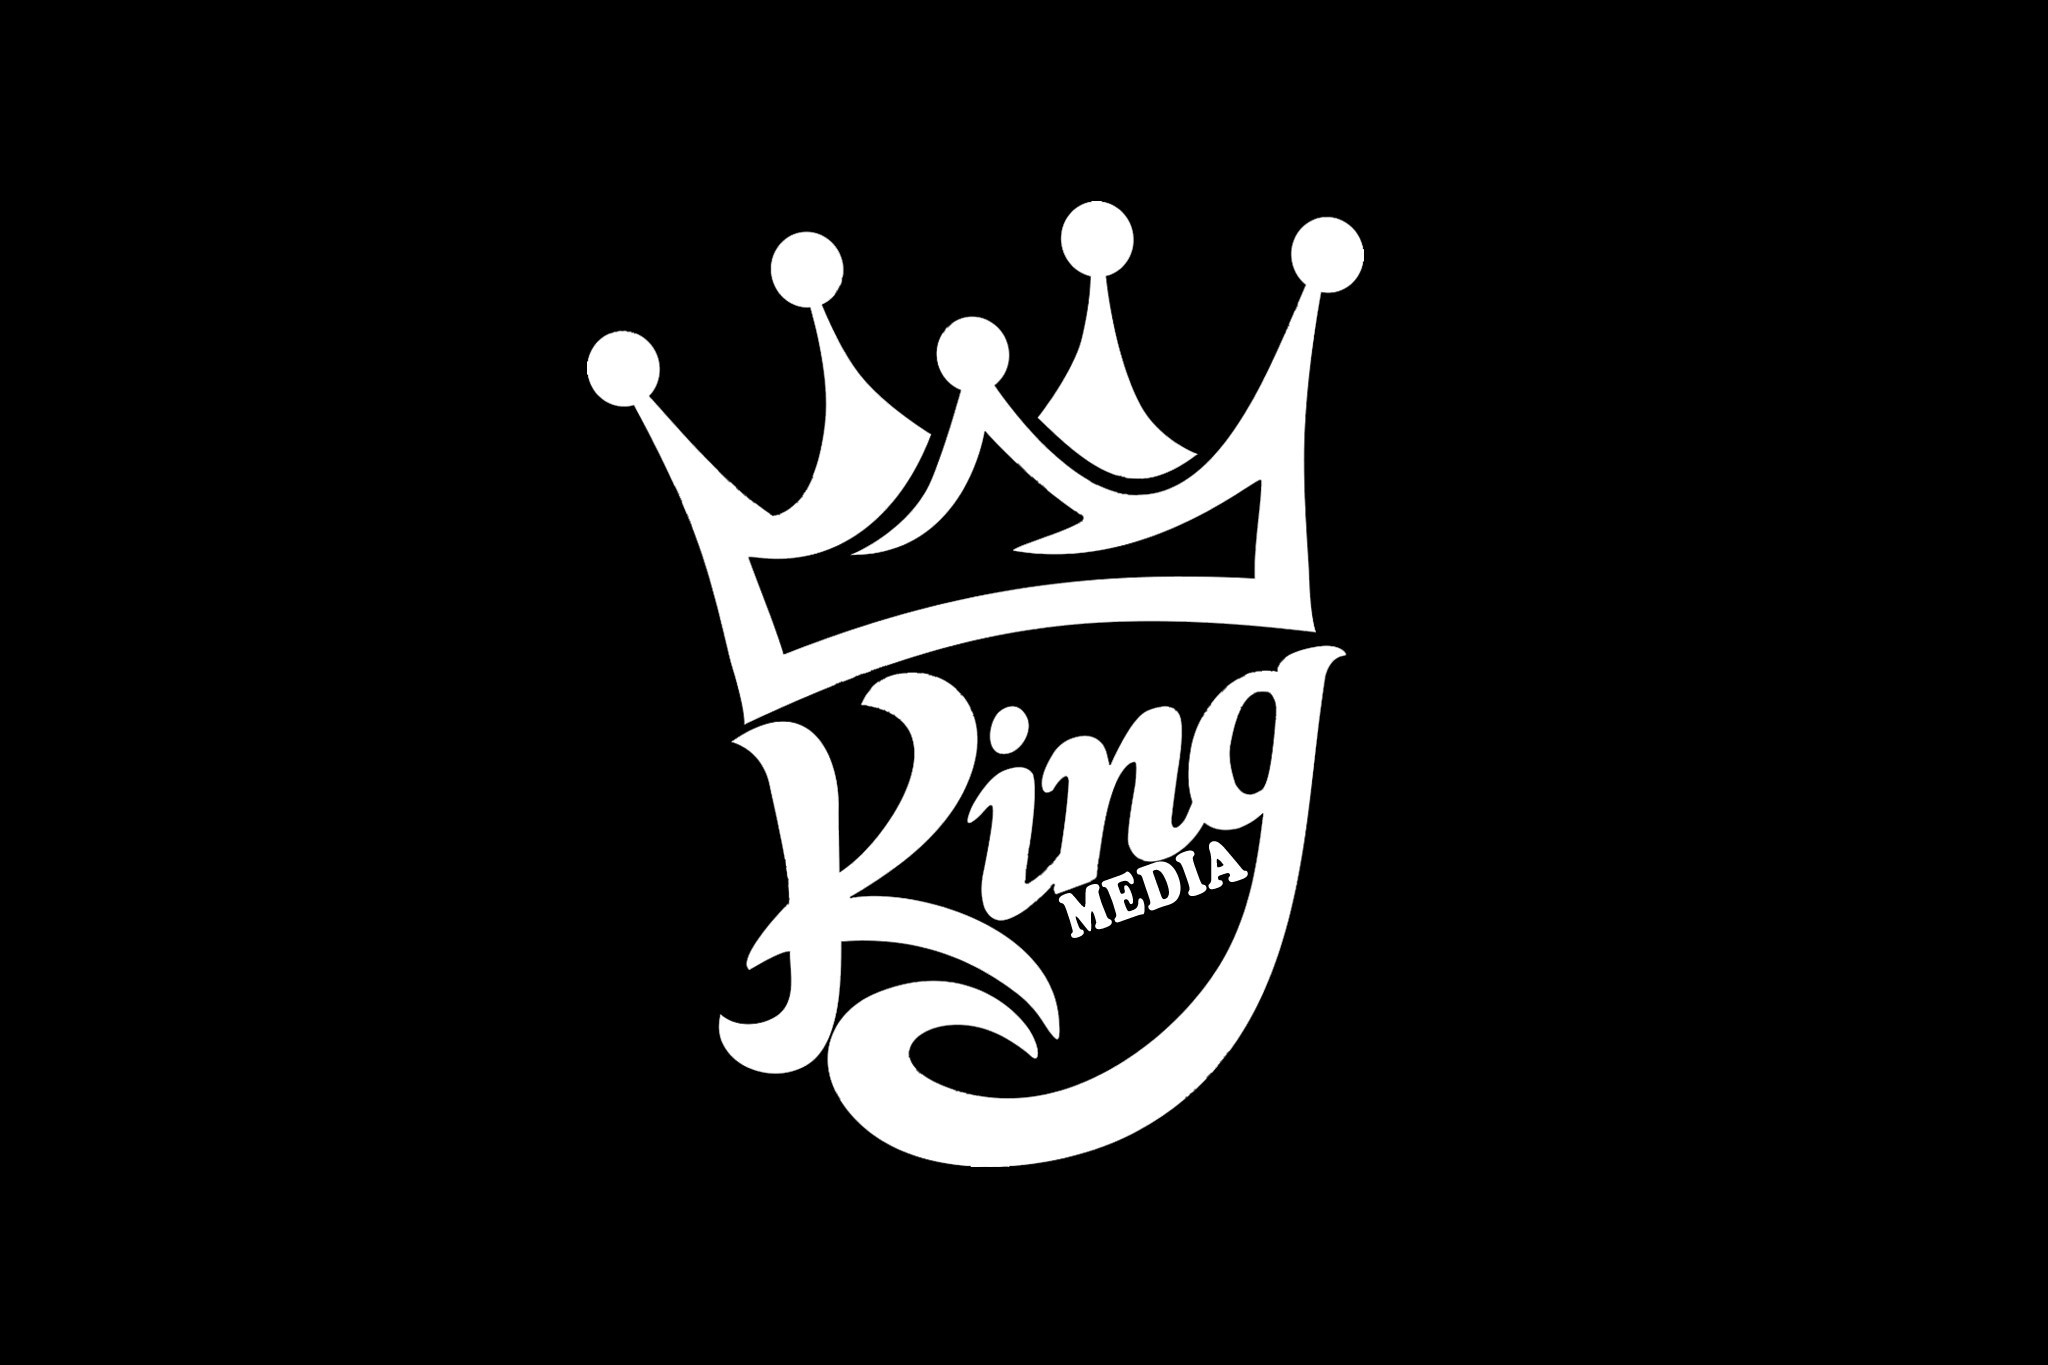 2048x1365 La Kings Logo - wallpaper.